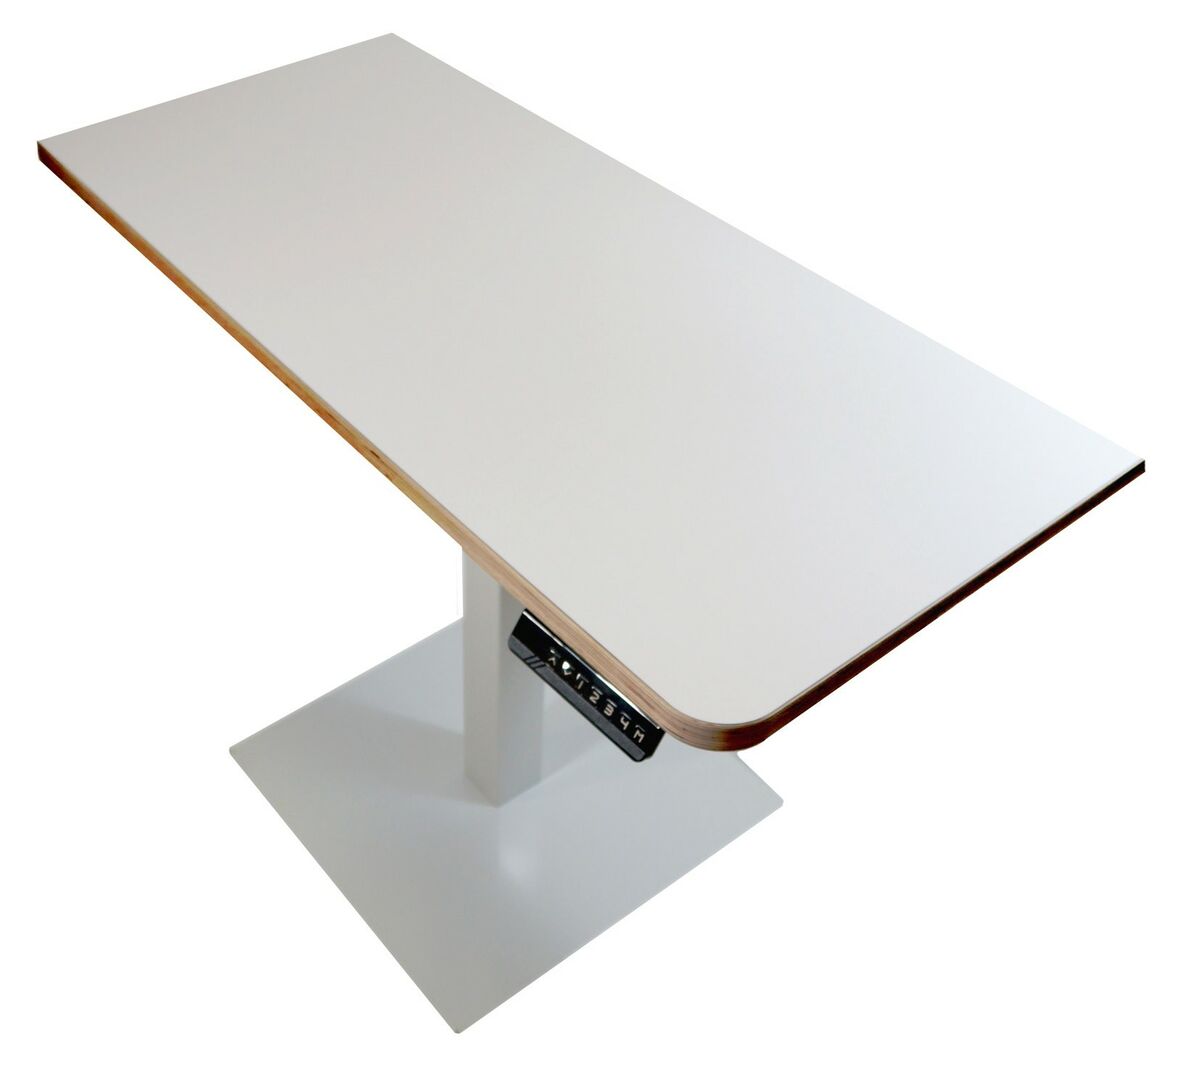 Sähköpöytä 110x60cm, runko ja suuri pöytätaso